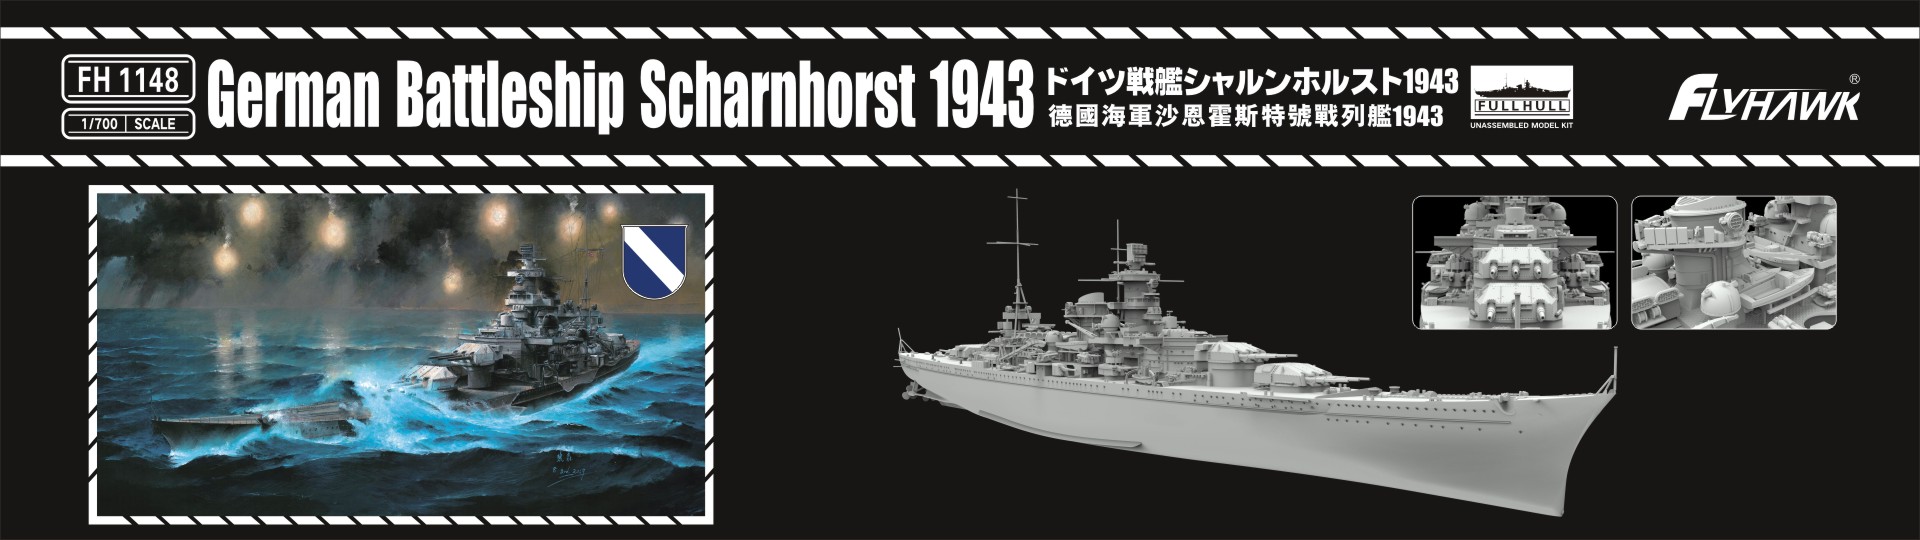 フライホーク[FLYFH1148]1/700 ドイツ海軍シャルンホルスト1943